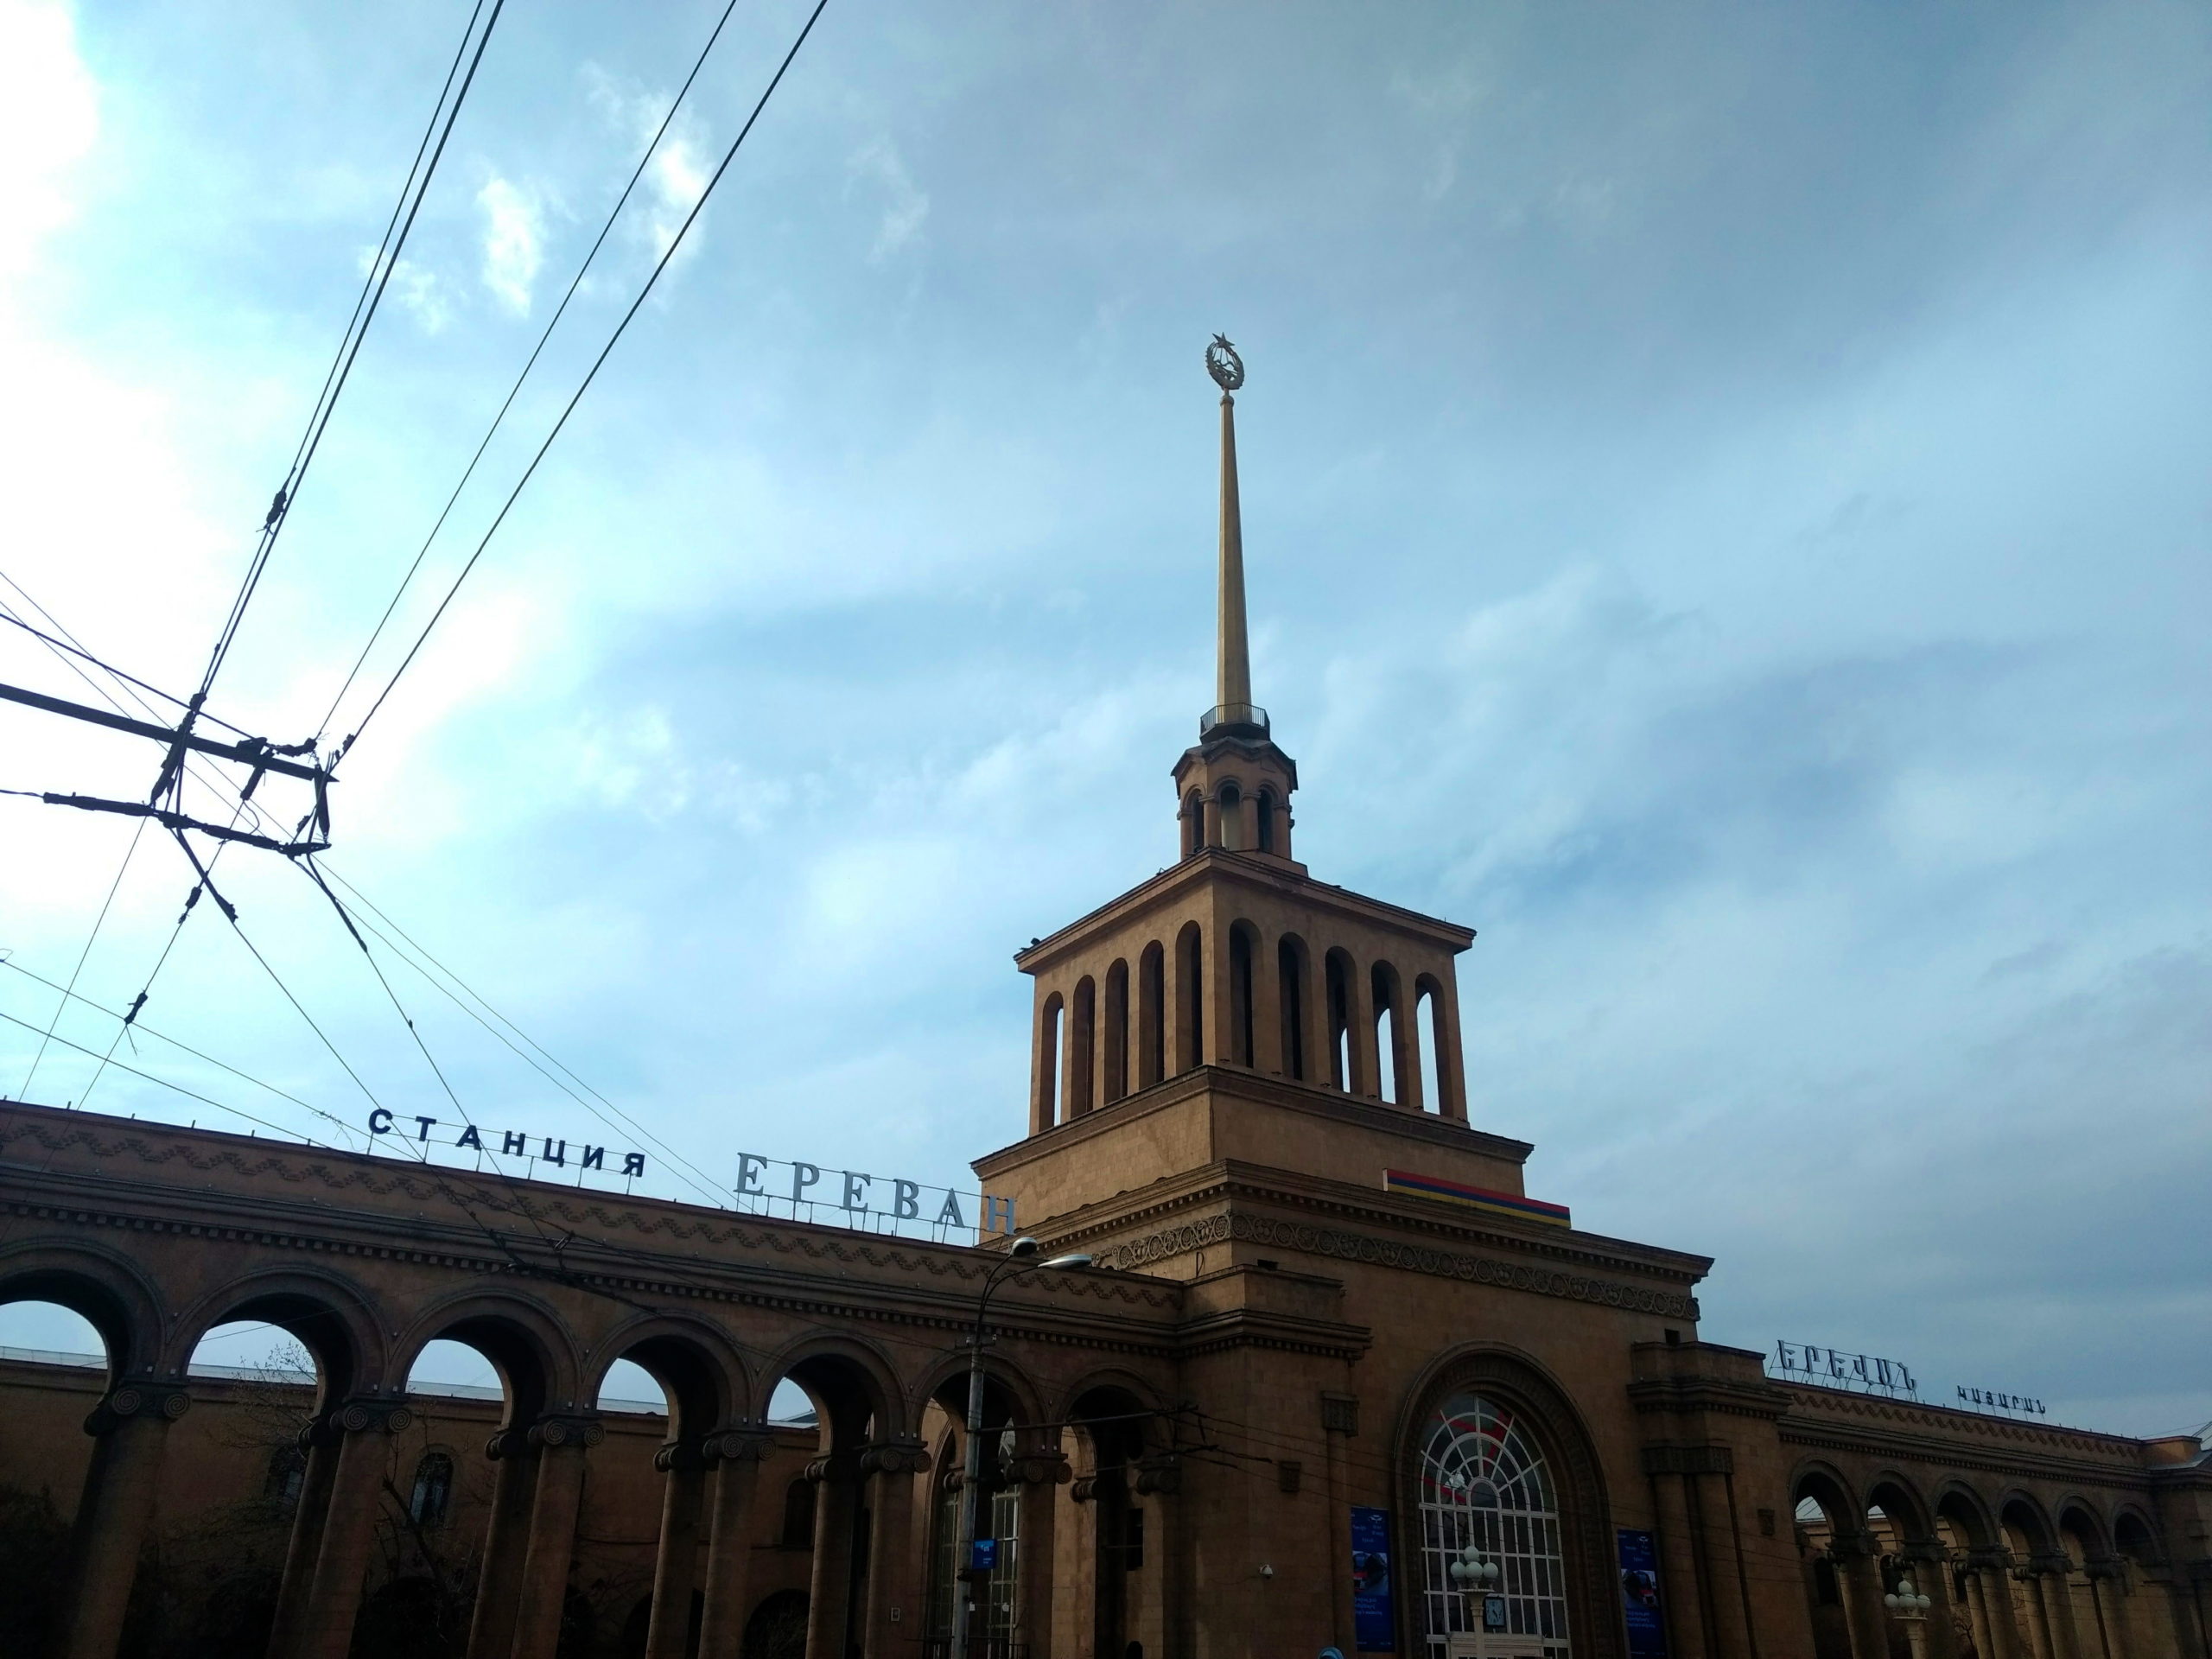 Estación de ferrocarril de Ereván, Armenia